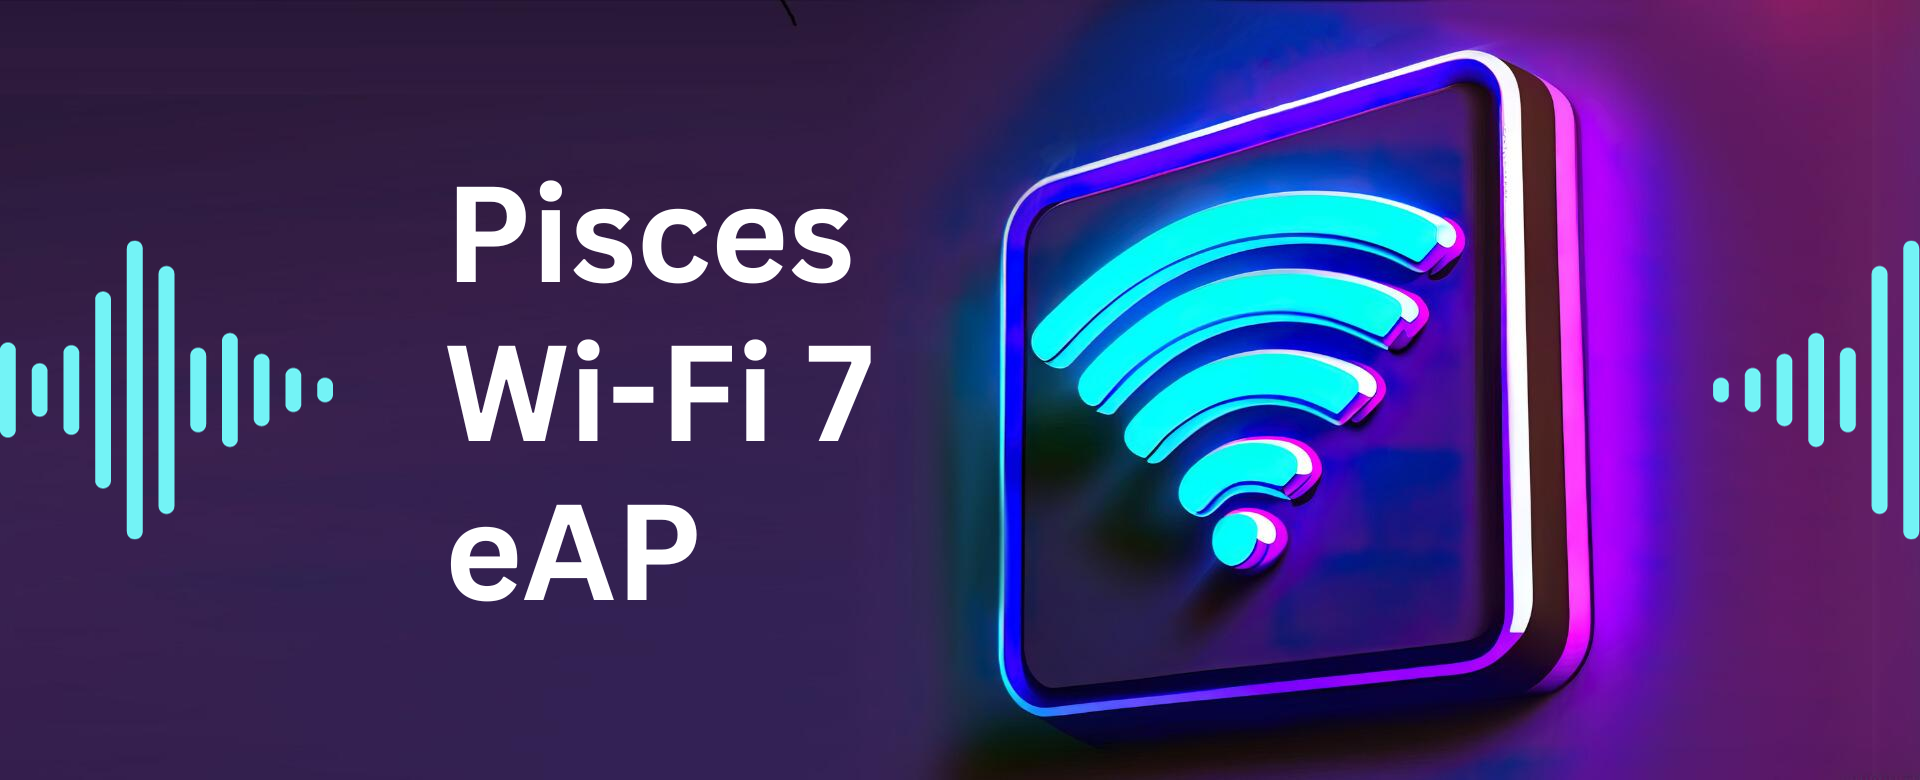 迎接Wi-Fi 7环旭电子推出Pisces企业级无线路由器 助力企业应对高密度数据挑战